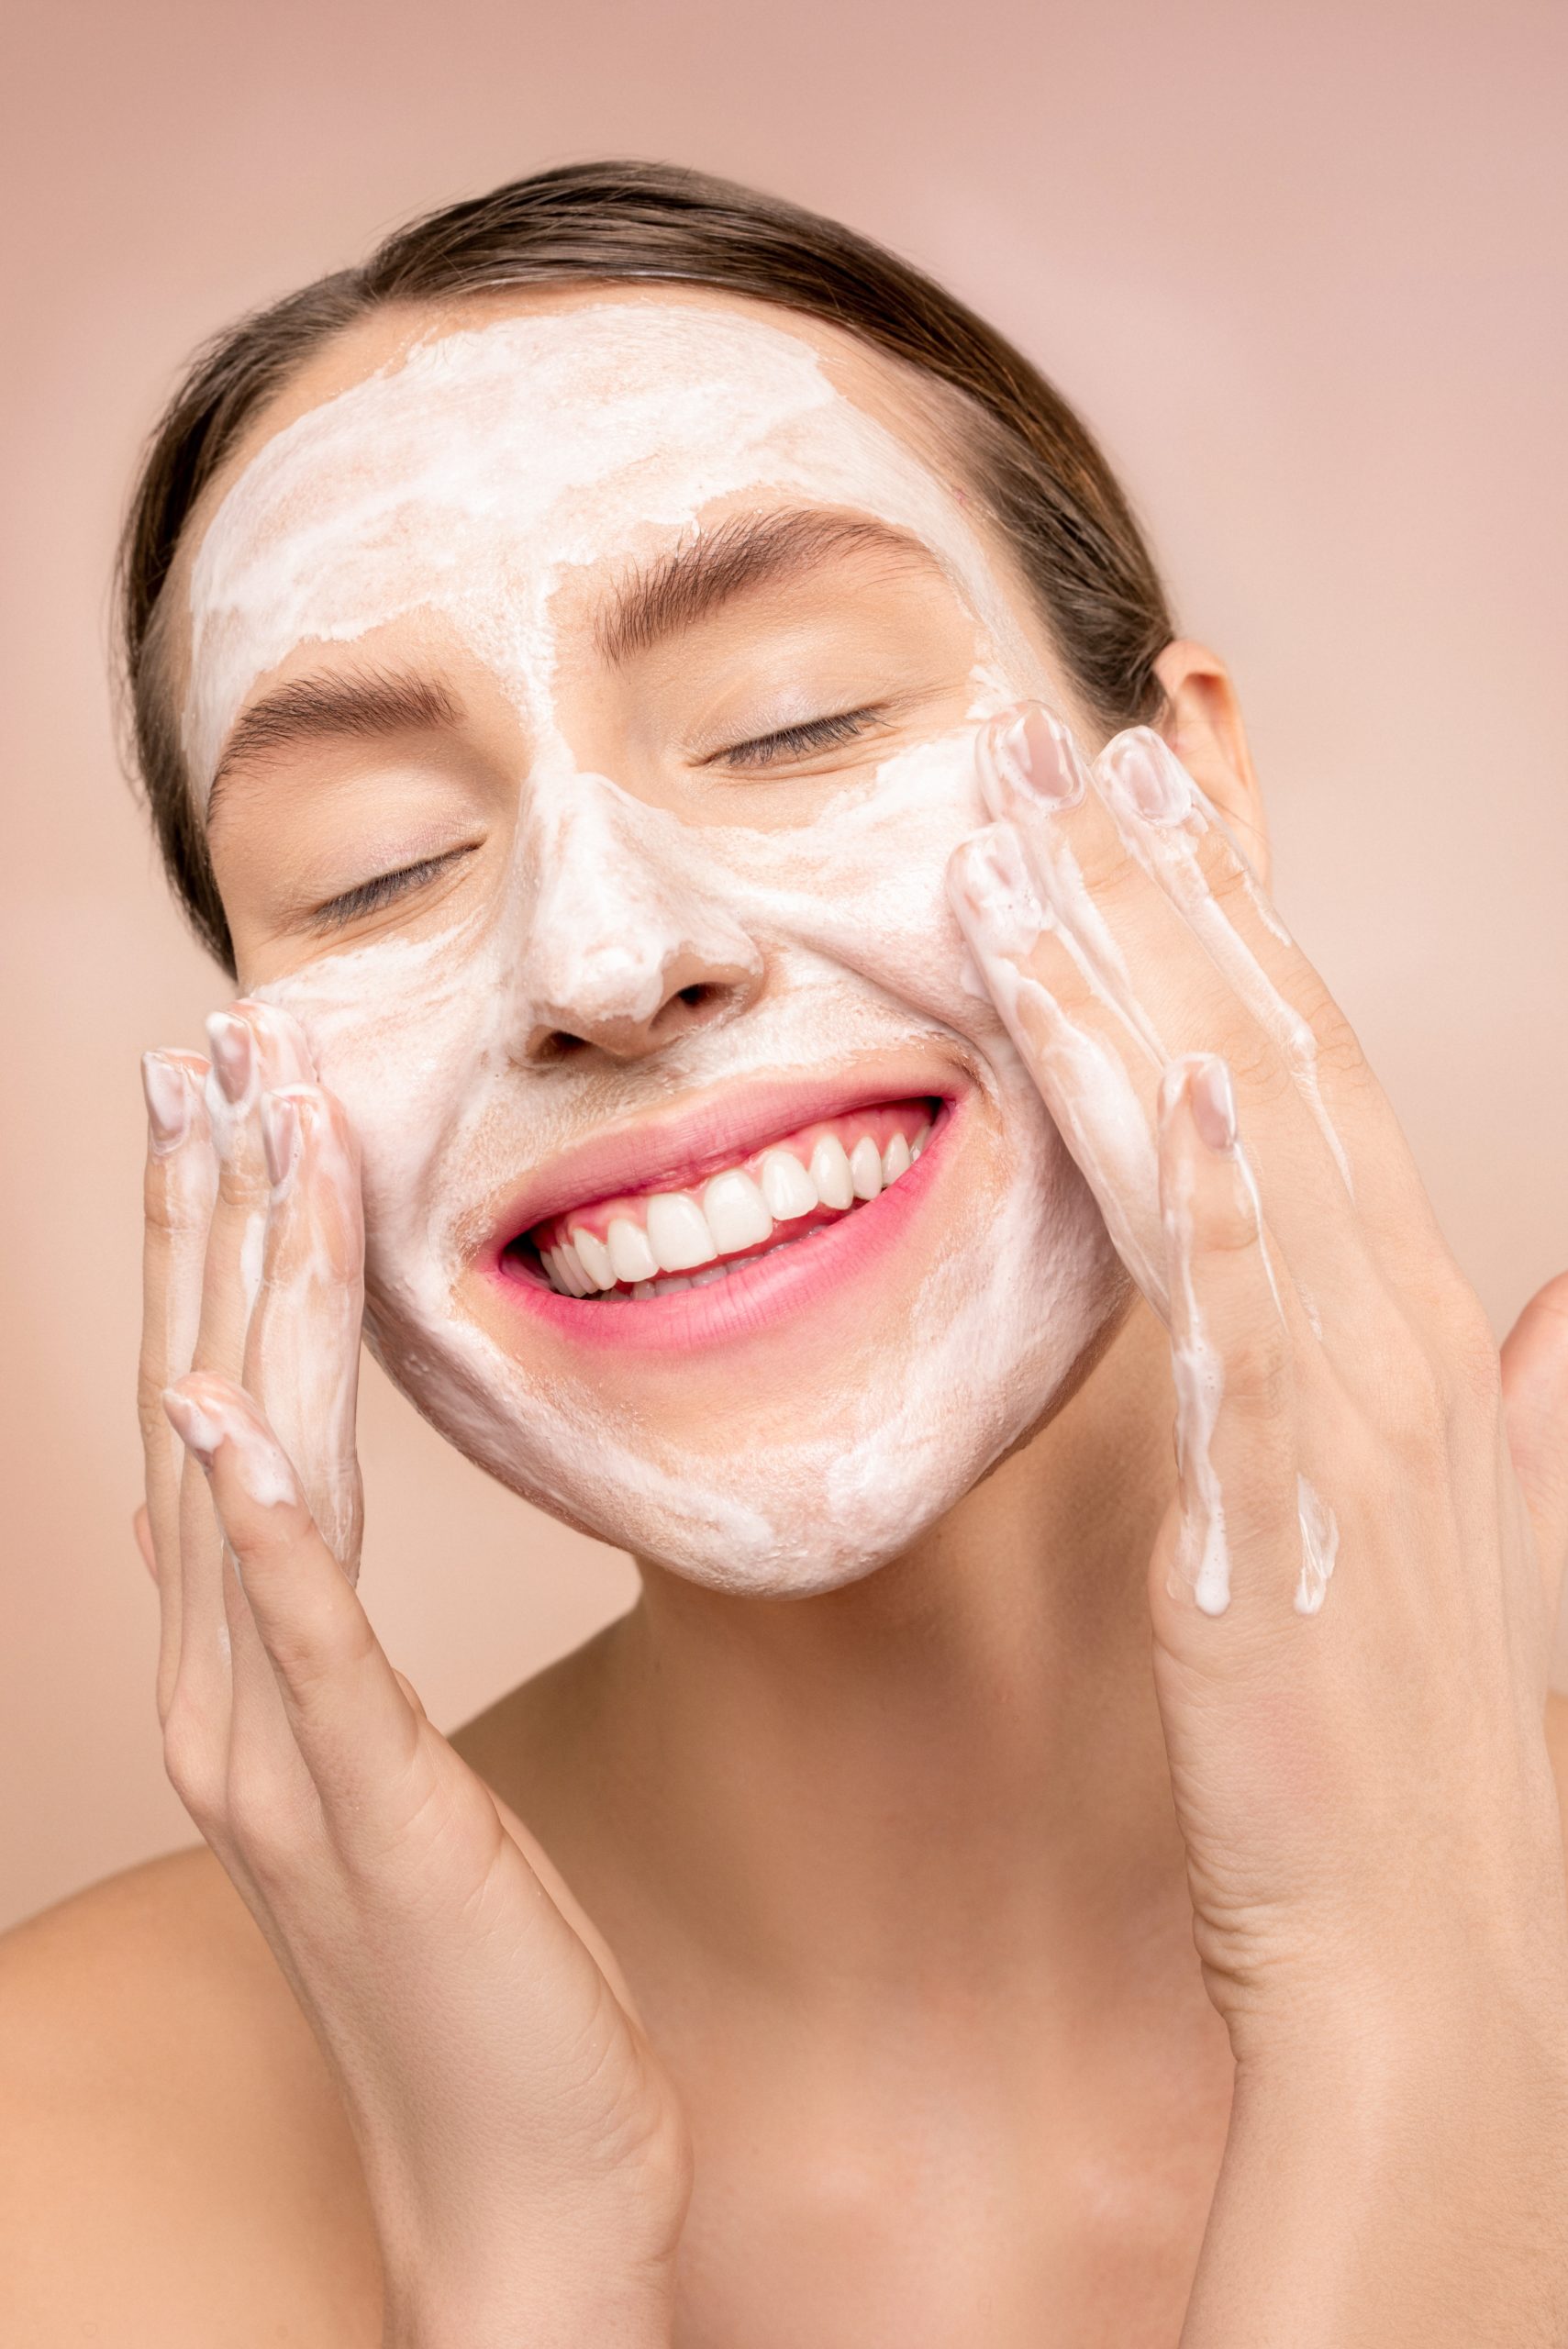 ESTELA BELLEZA. Cuidarse la piel. Foto de Shiny Diamond: https://www.pexels.com/es-es/foto/mujer-con-jabon-facial-blanco-en-la-cara-3762466/